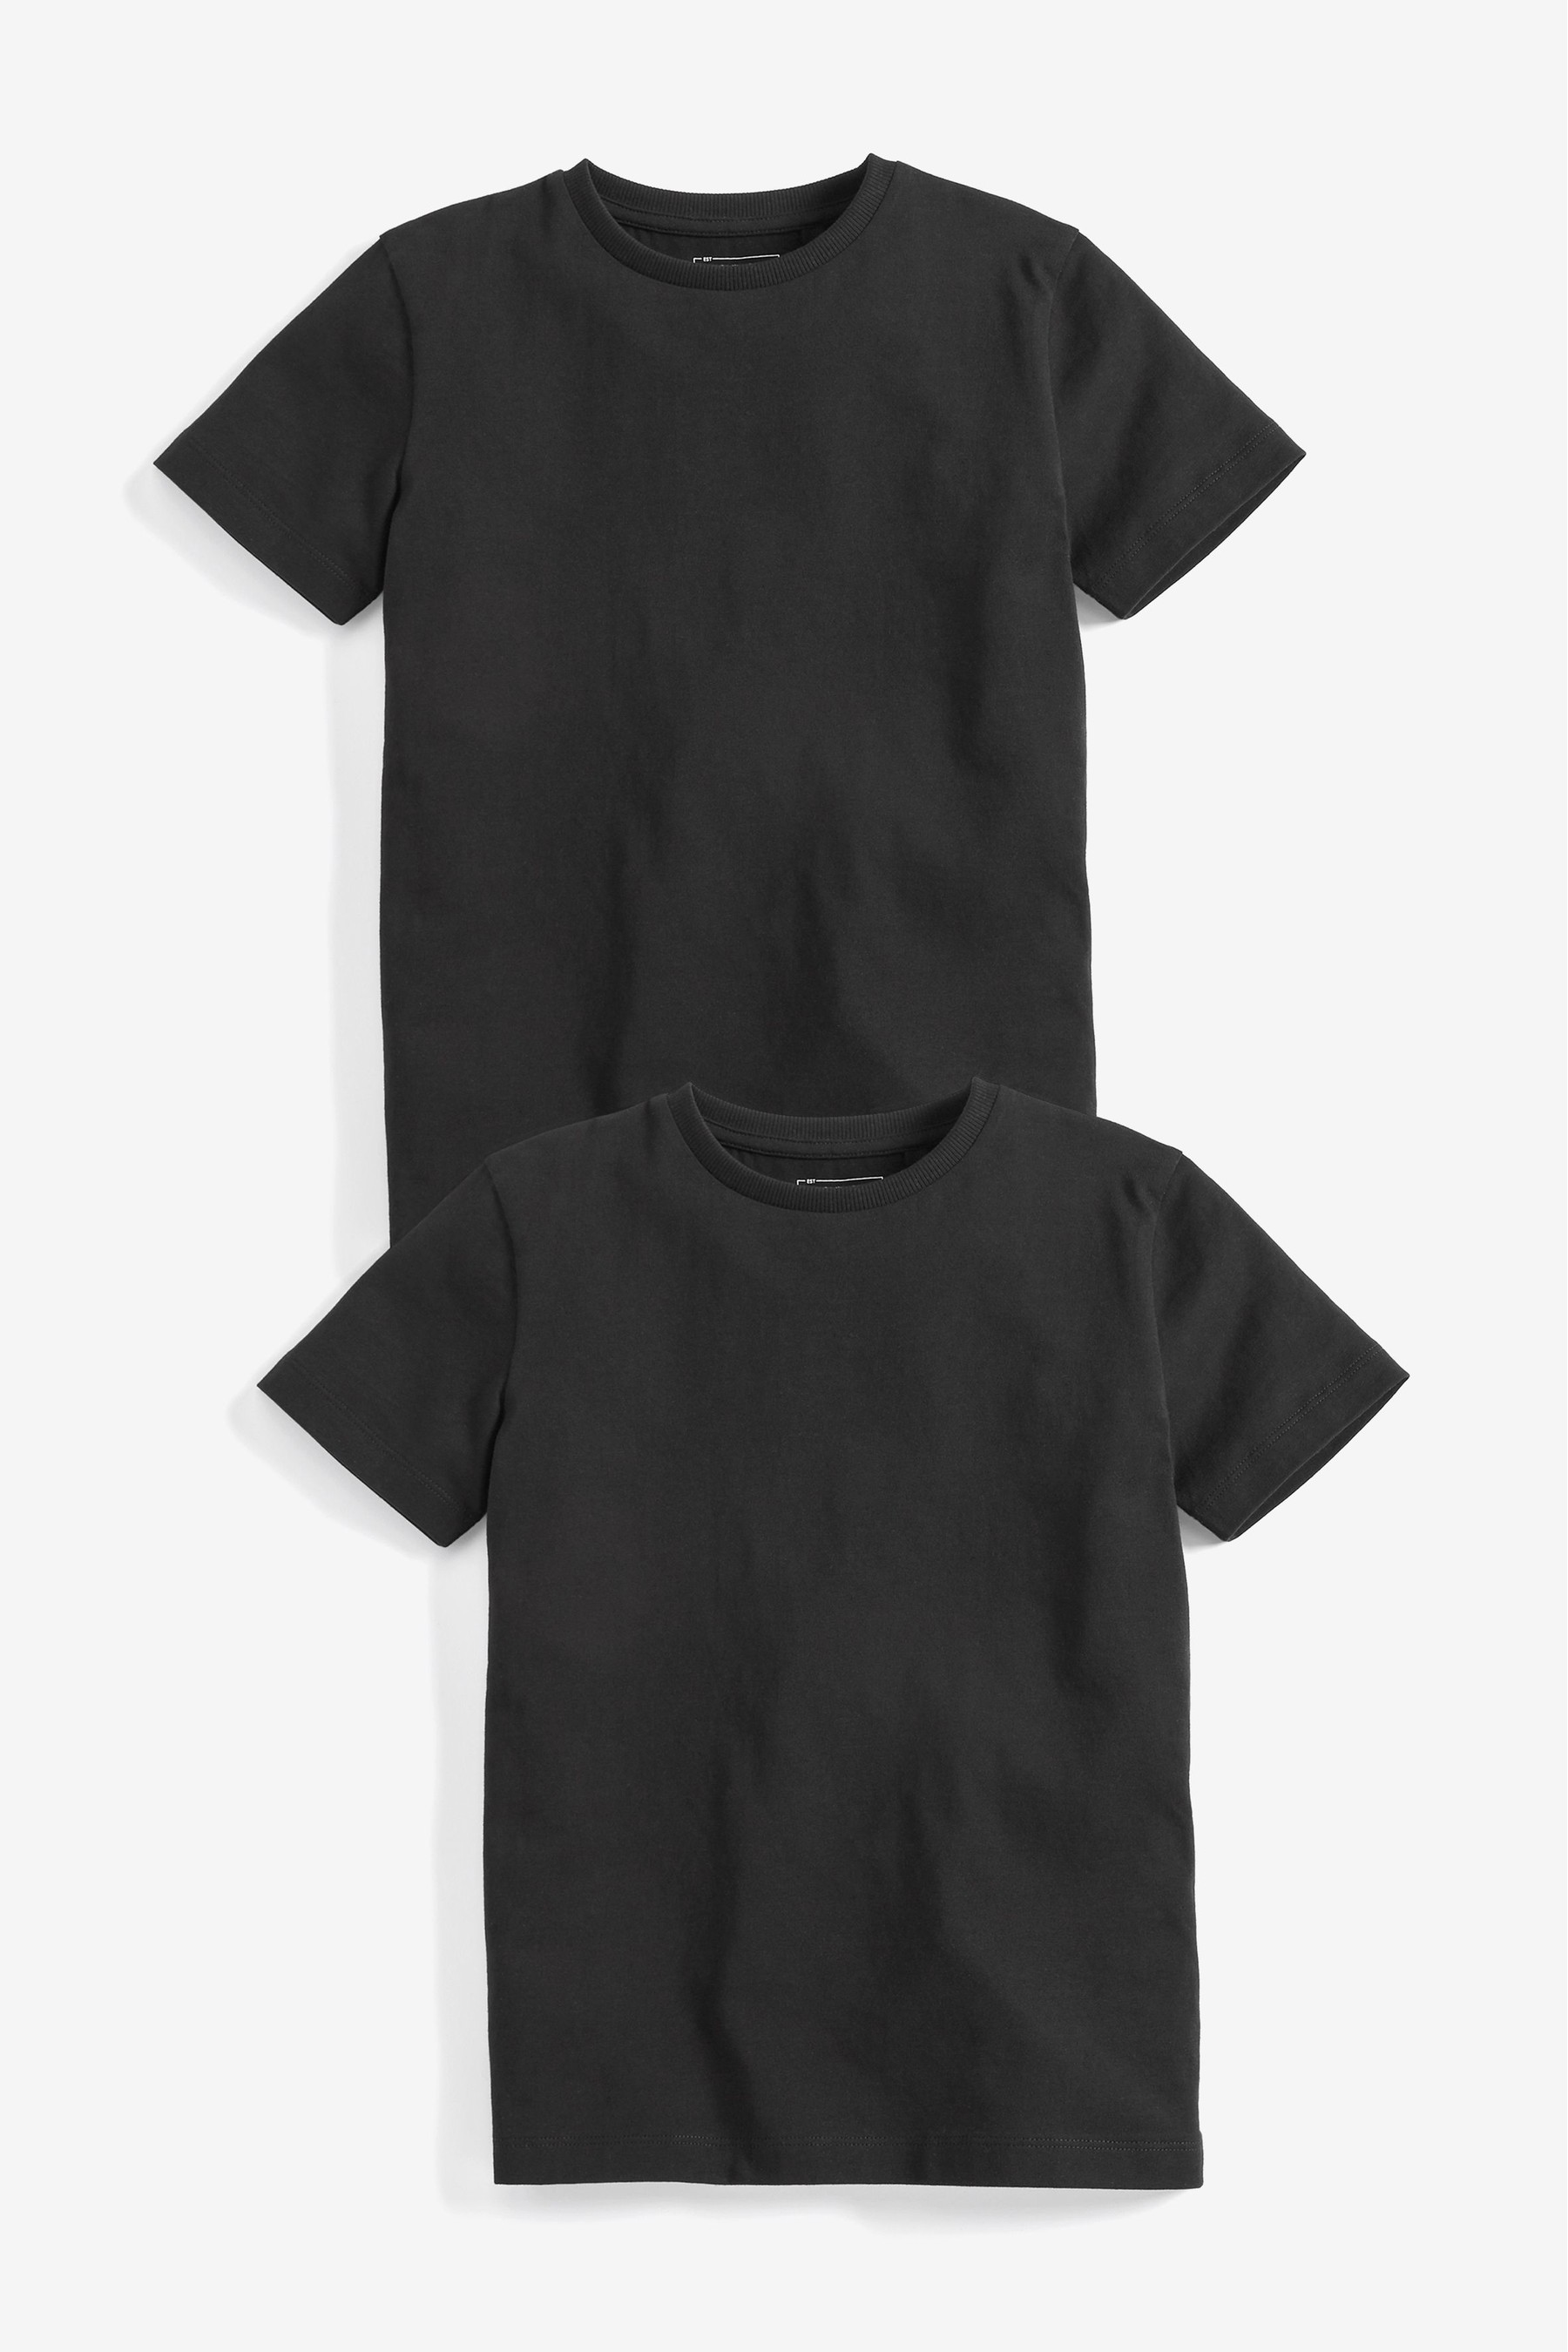 цена Комплект из 2 хлопковых футболок с короткими рукавами Next, черный